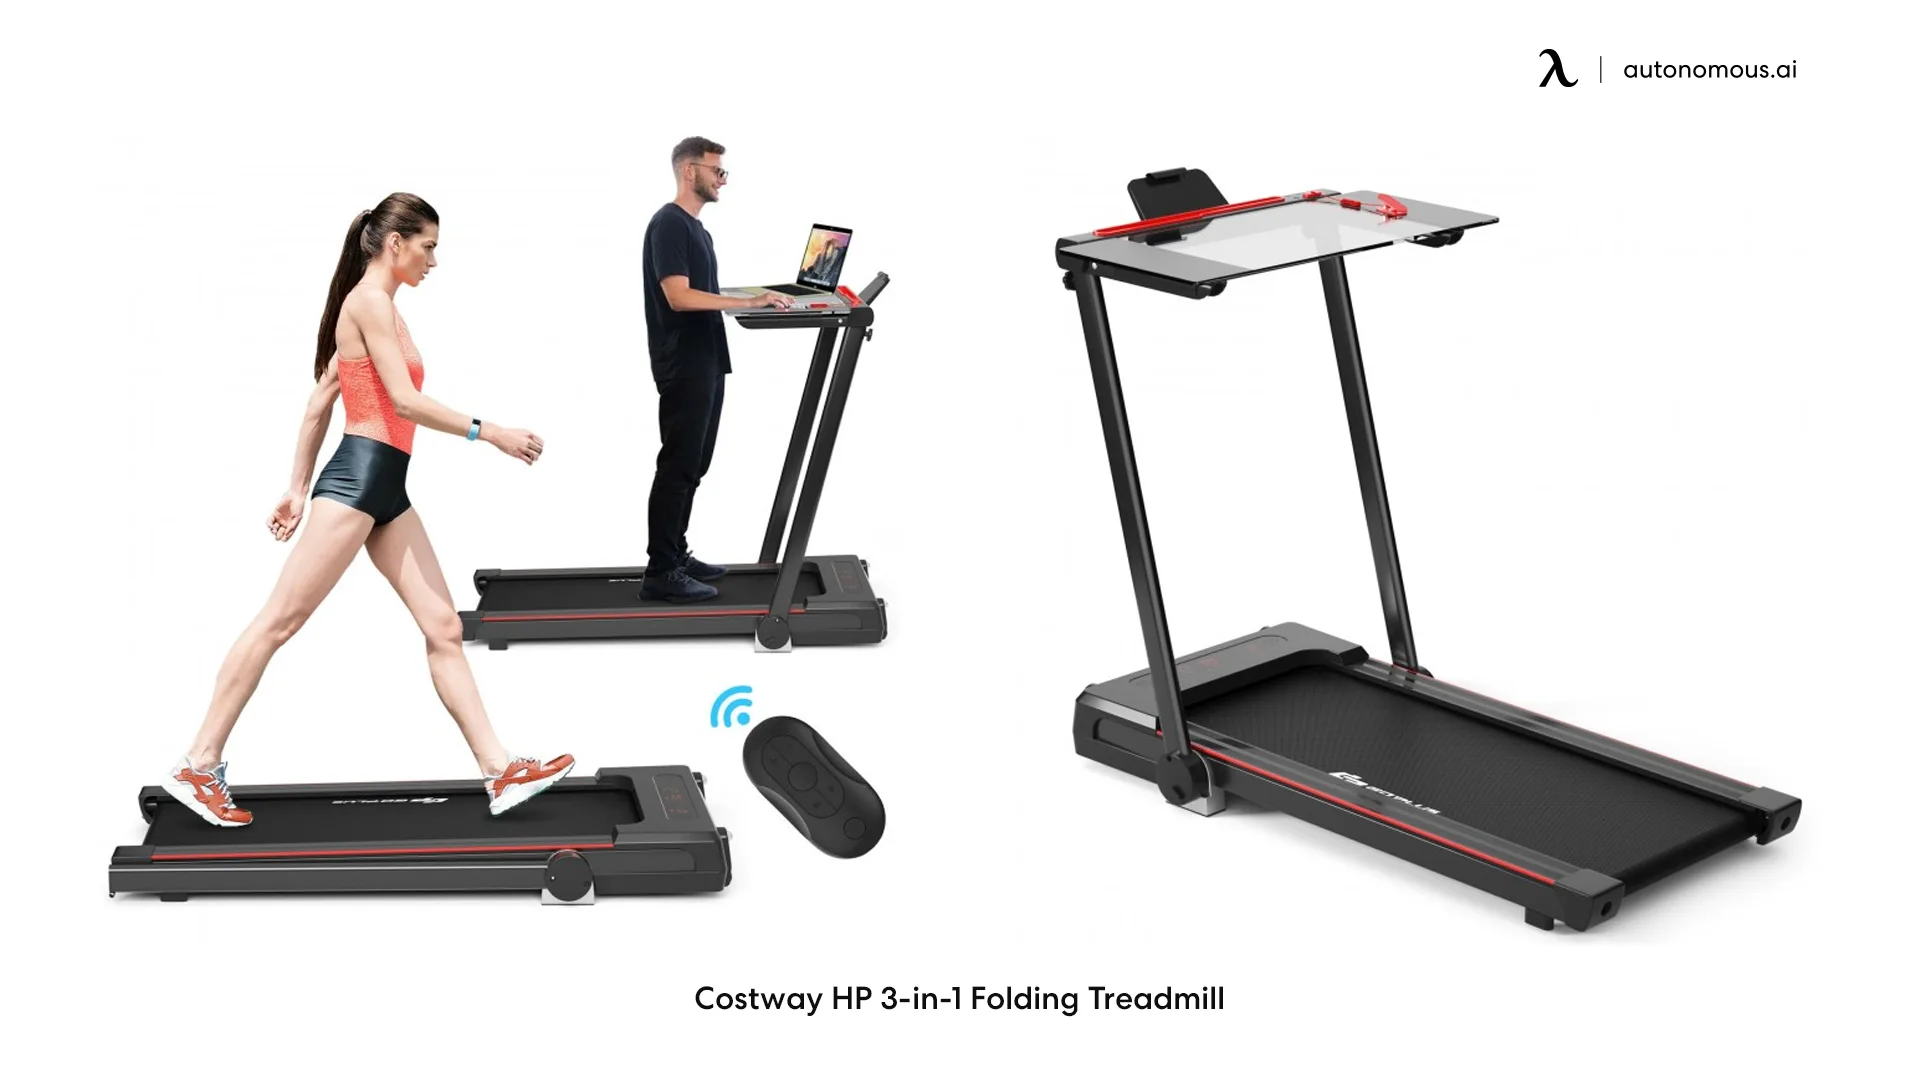 Costway HP 3-in-1 Folding Treadmill